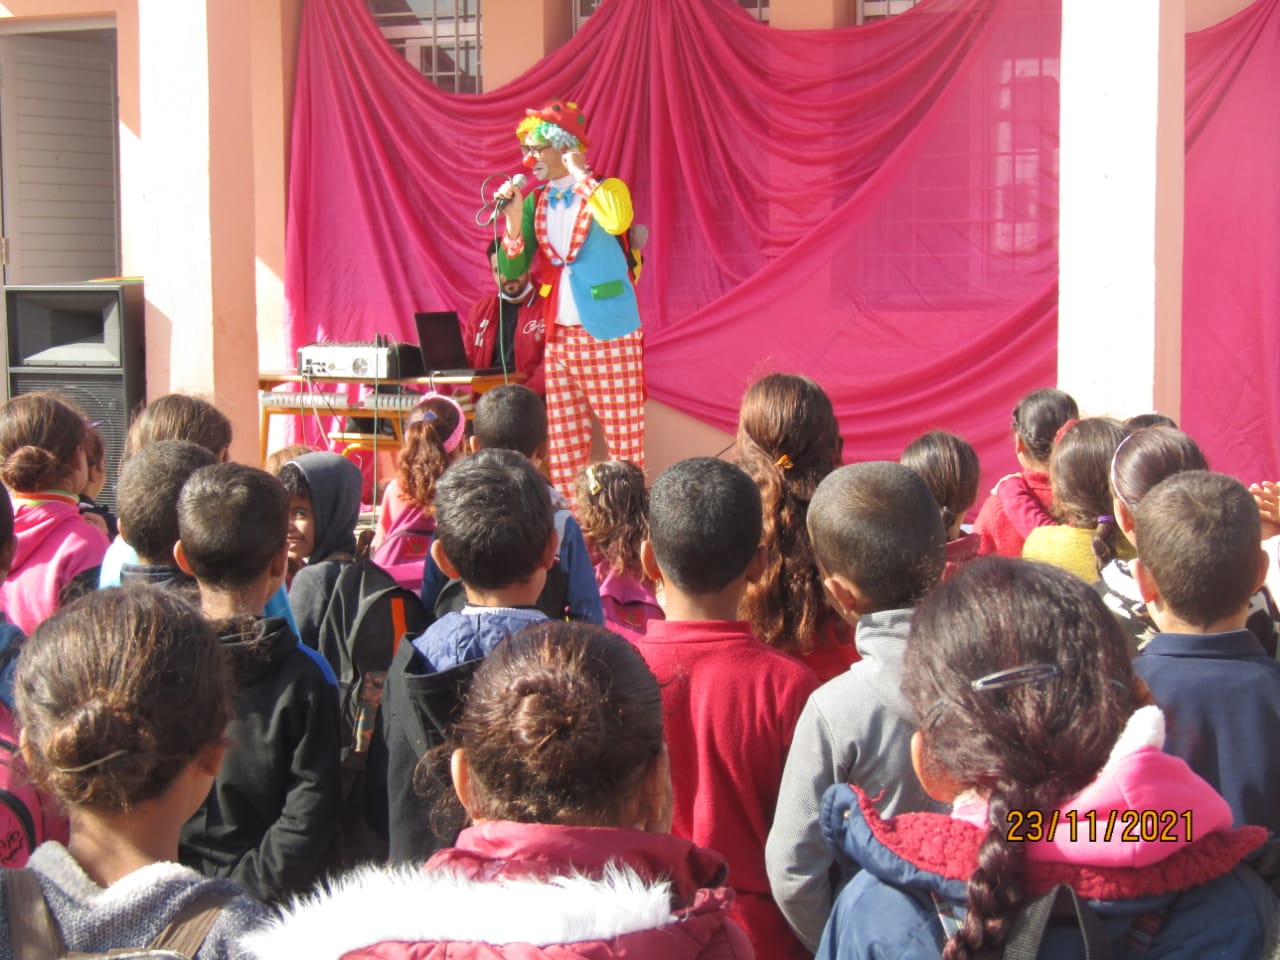 المركز الثقافي سيدي رحال يحتفل باليوم العالمي للطفل و عيدي المسيرة الخضراء و الإستقلال.